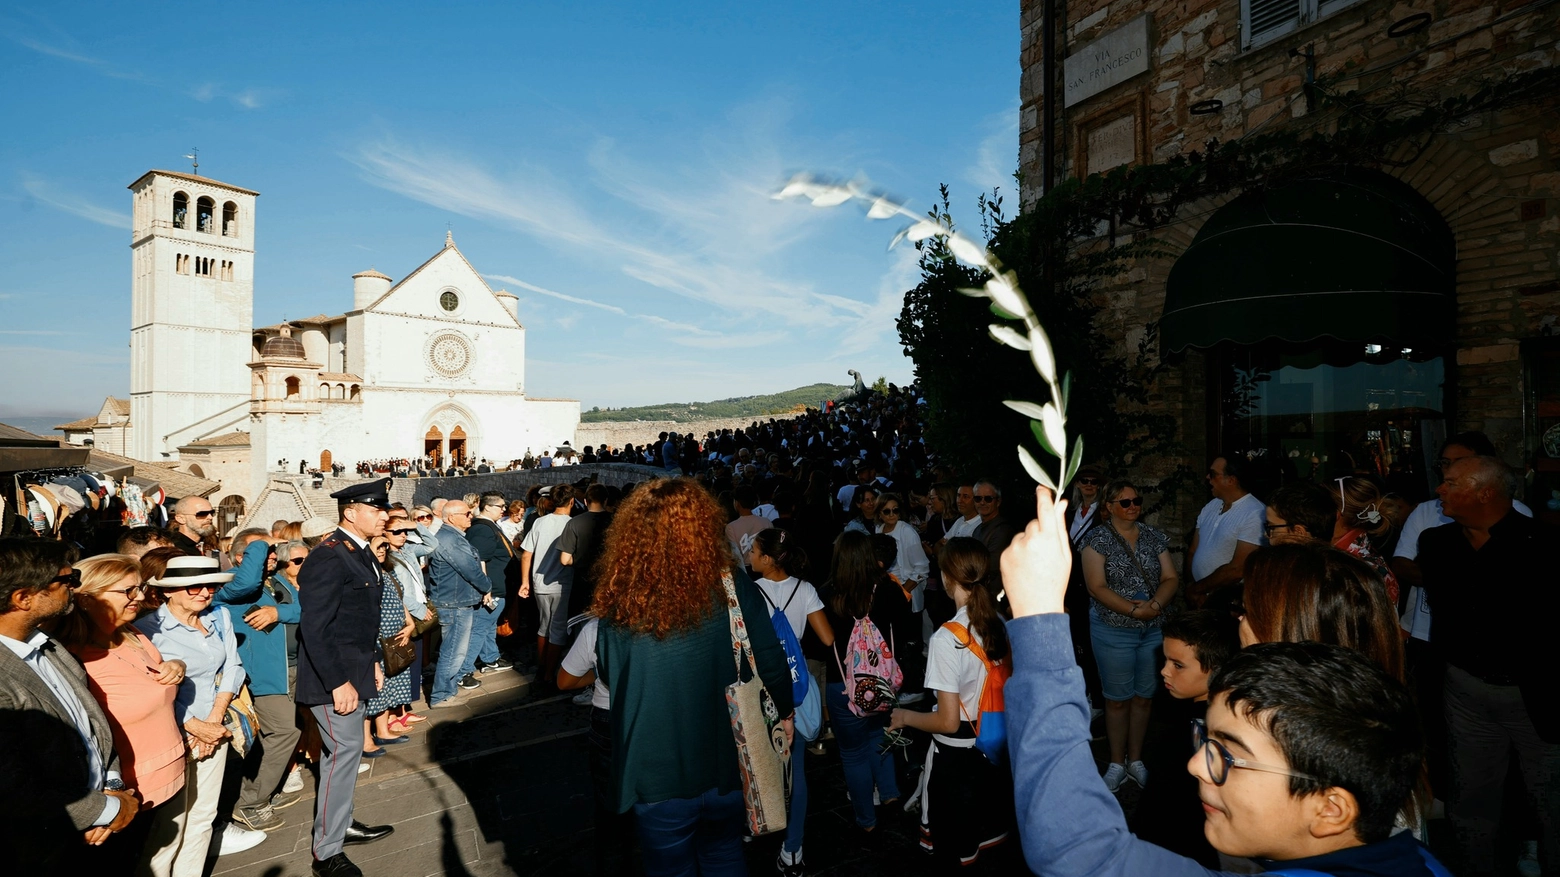 La festa di Assisi (Fonte: pagina Fb San Francesco d'Assisi)